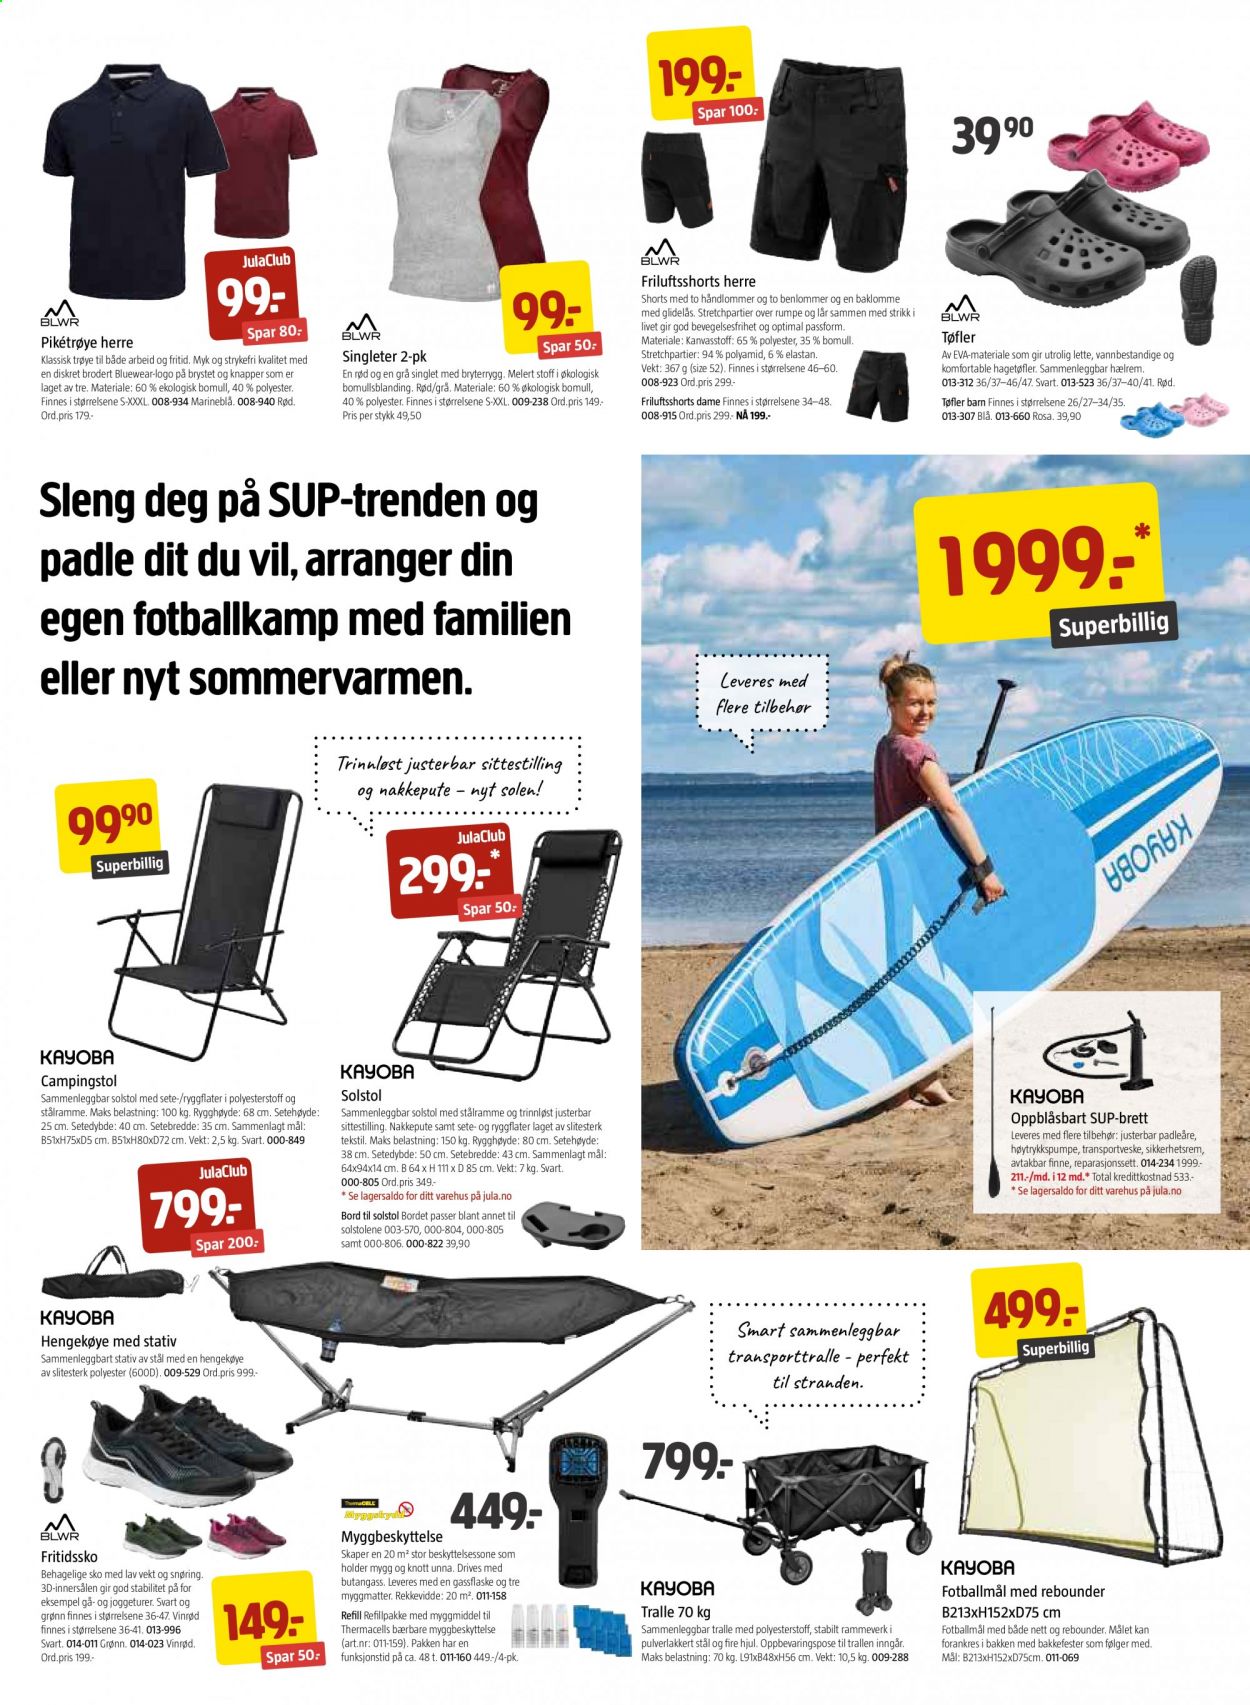 thumbnail - Kundeavis Jula - 28.5.2021 - 27.6.2021 - Produkter fra tilbudsaviser - Kayoba, bord, hengekøye. Side 3.